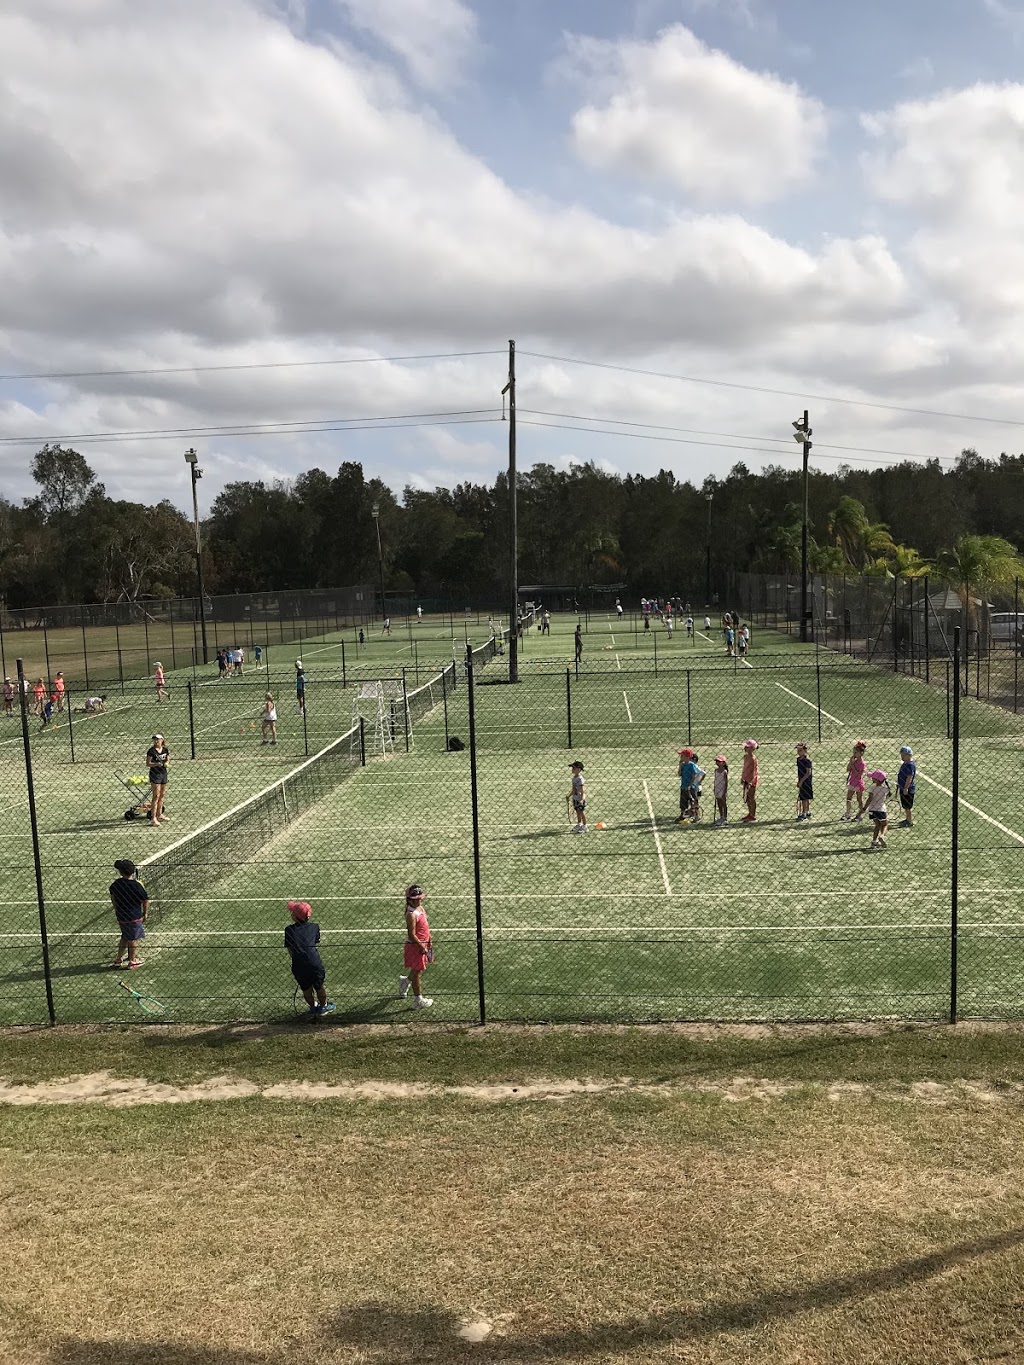 Sylvania Waters Tennis Centre | health | 223 Belgrave Esplanade, Sylvania Waters NSW 2224, Australia | 0295224252 OR +61 2 9522 4252